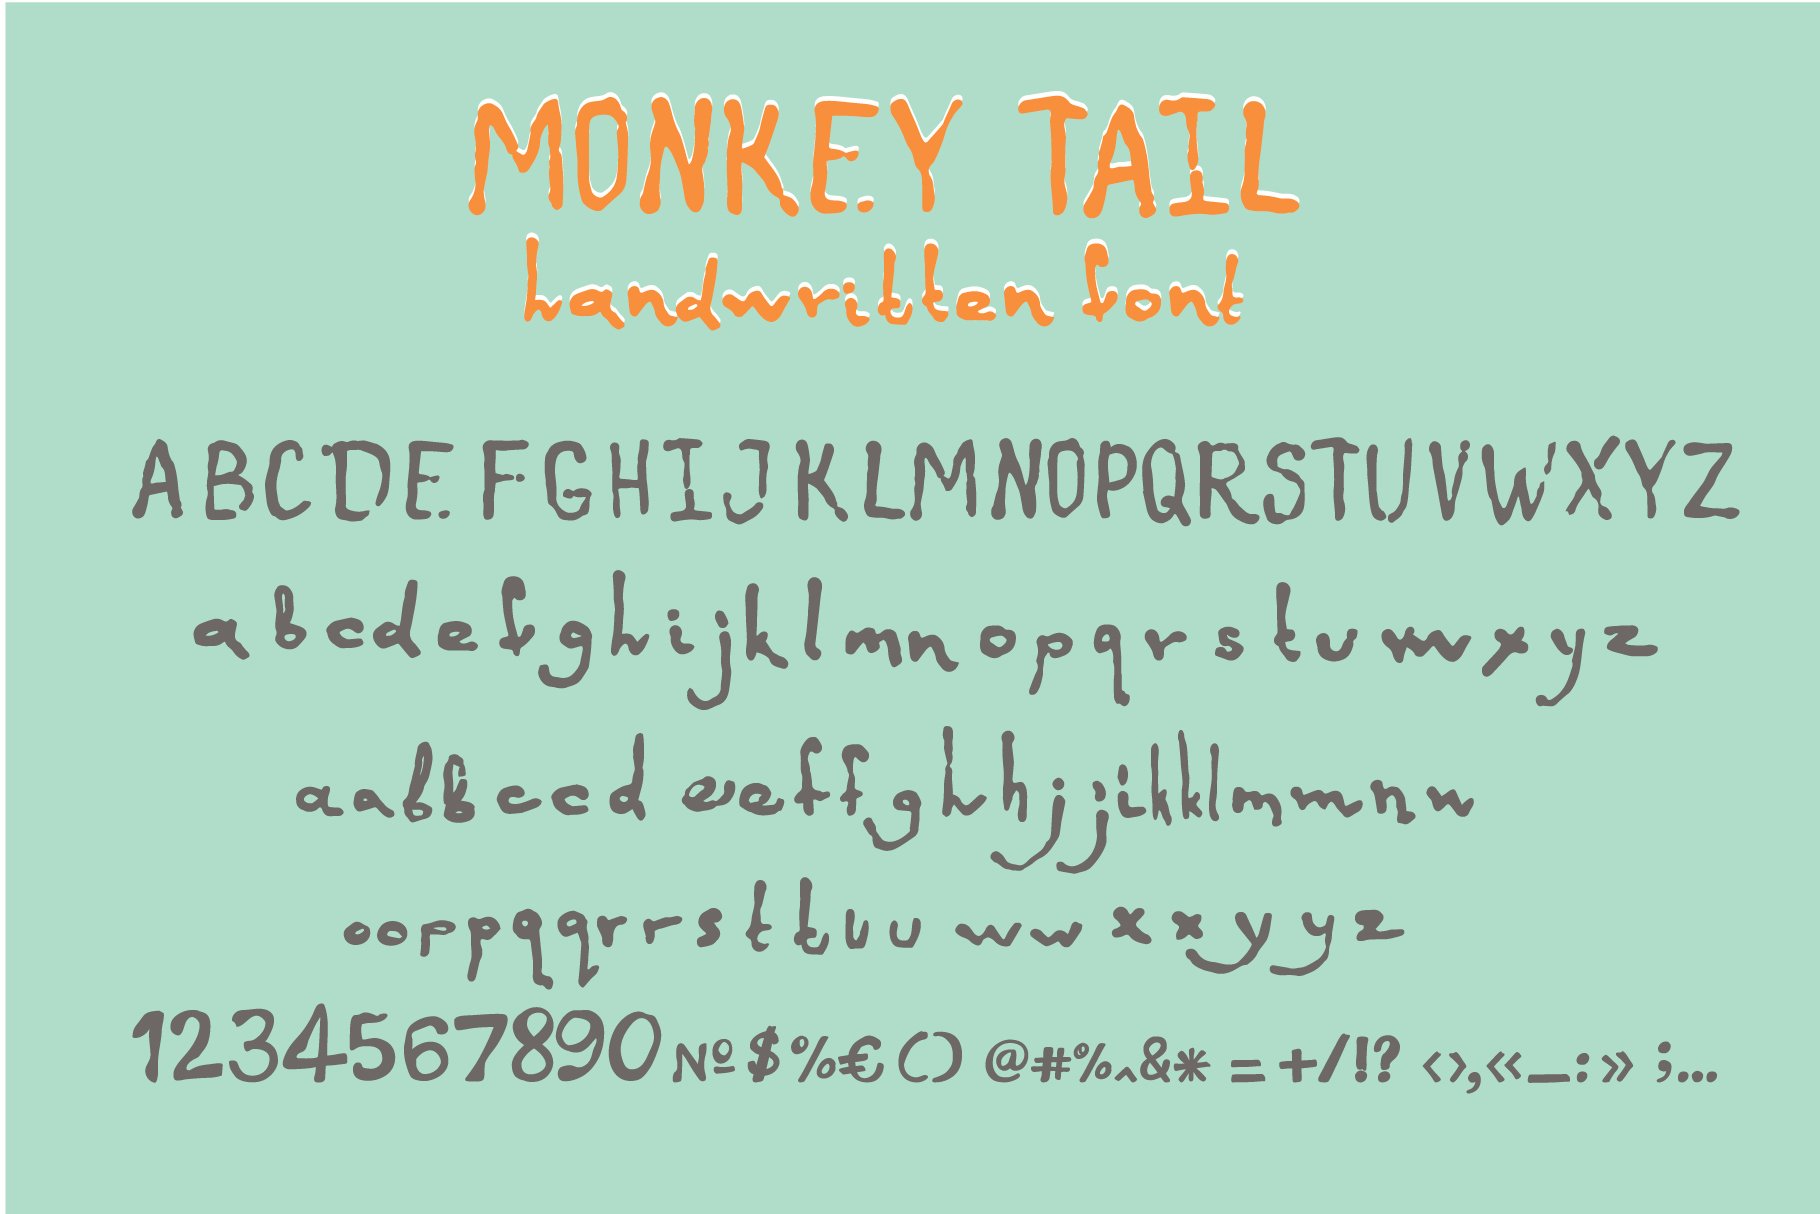 monkey tail font2 85